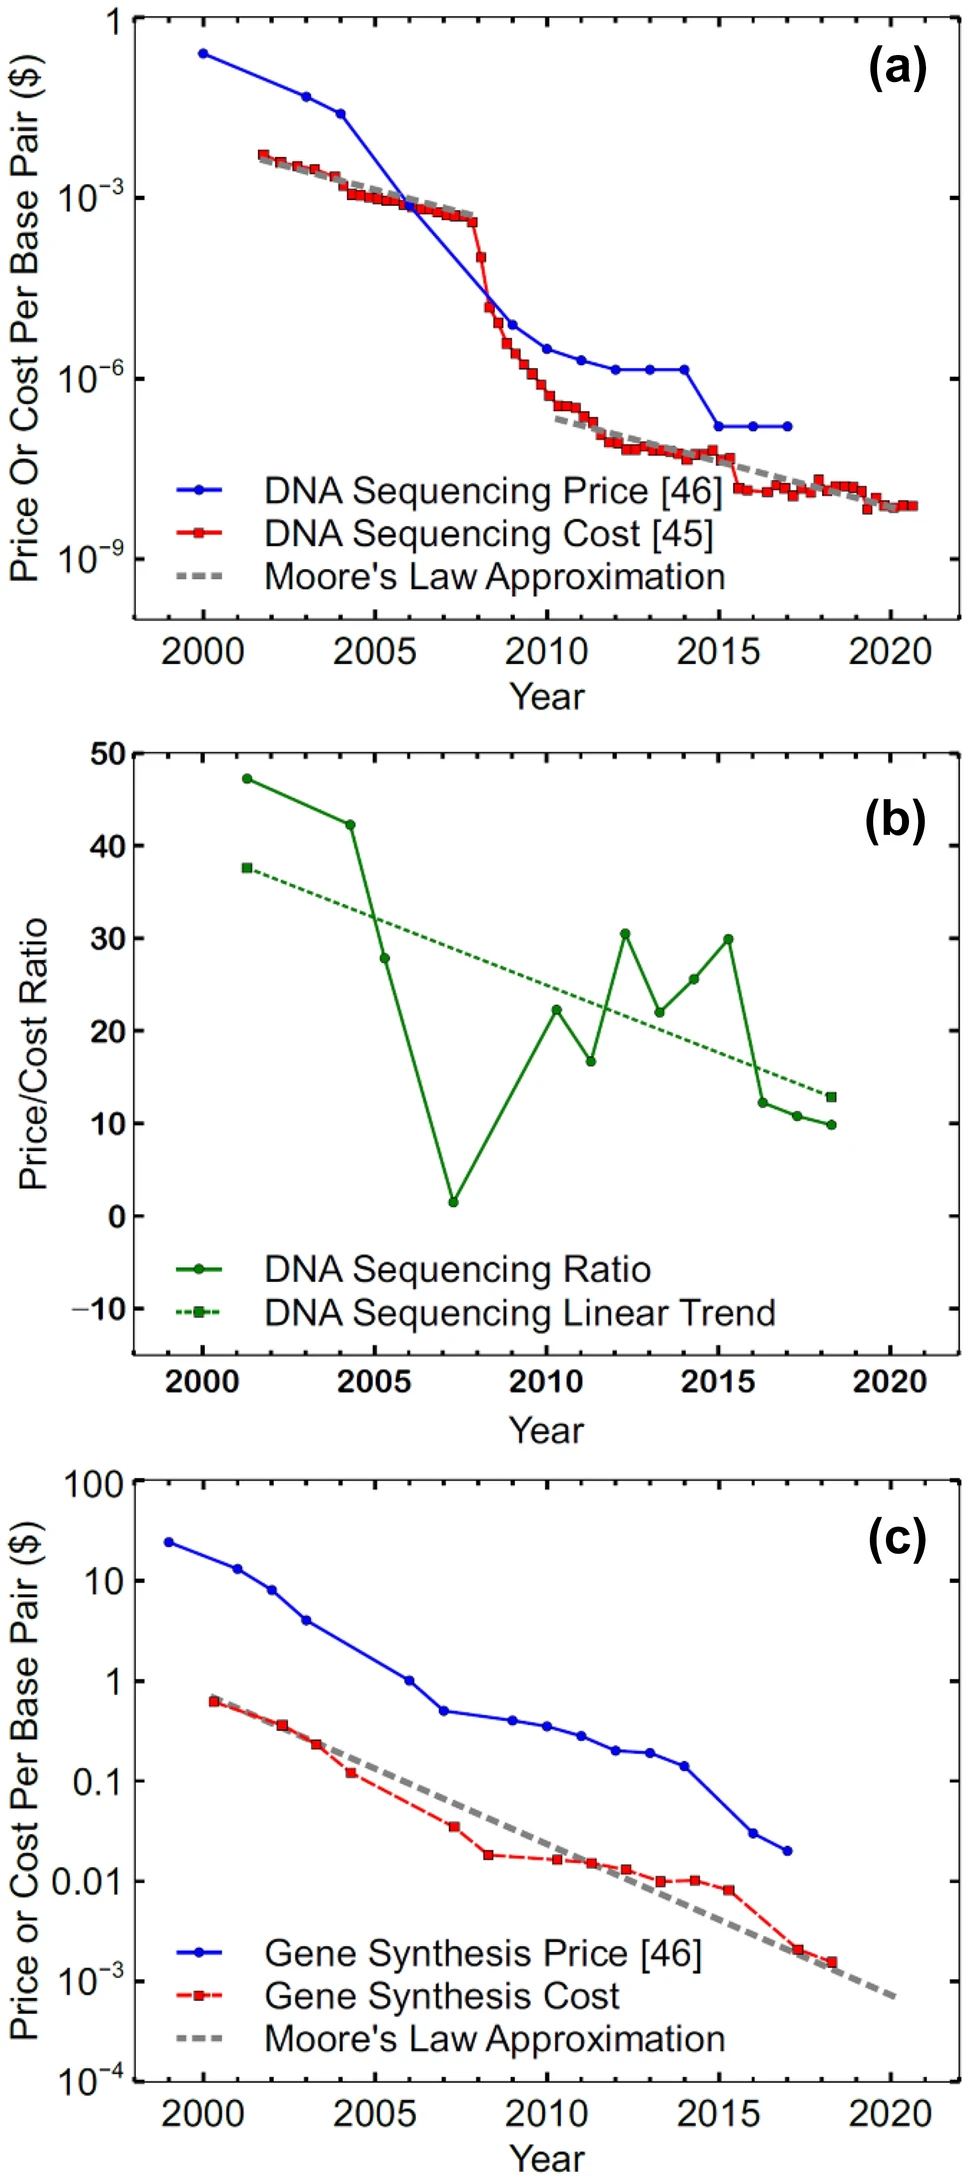 图 | 2000-2020 年 DNA 测序的价格和成本（a）；DNA测序的价格/成本比（b）；DNA 合成的价格和成本 (c) 以及与摩尔定律近似值的比较（来源：Nature）